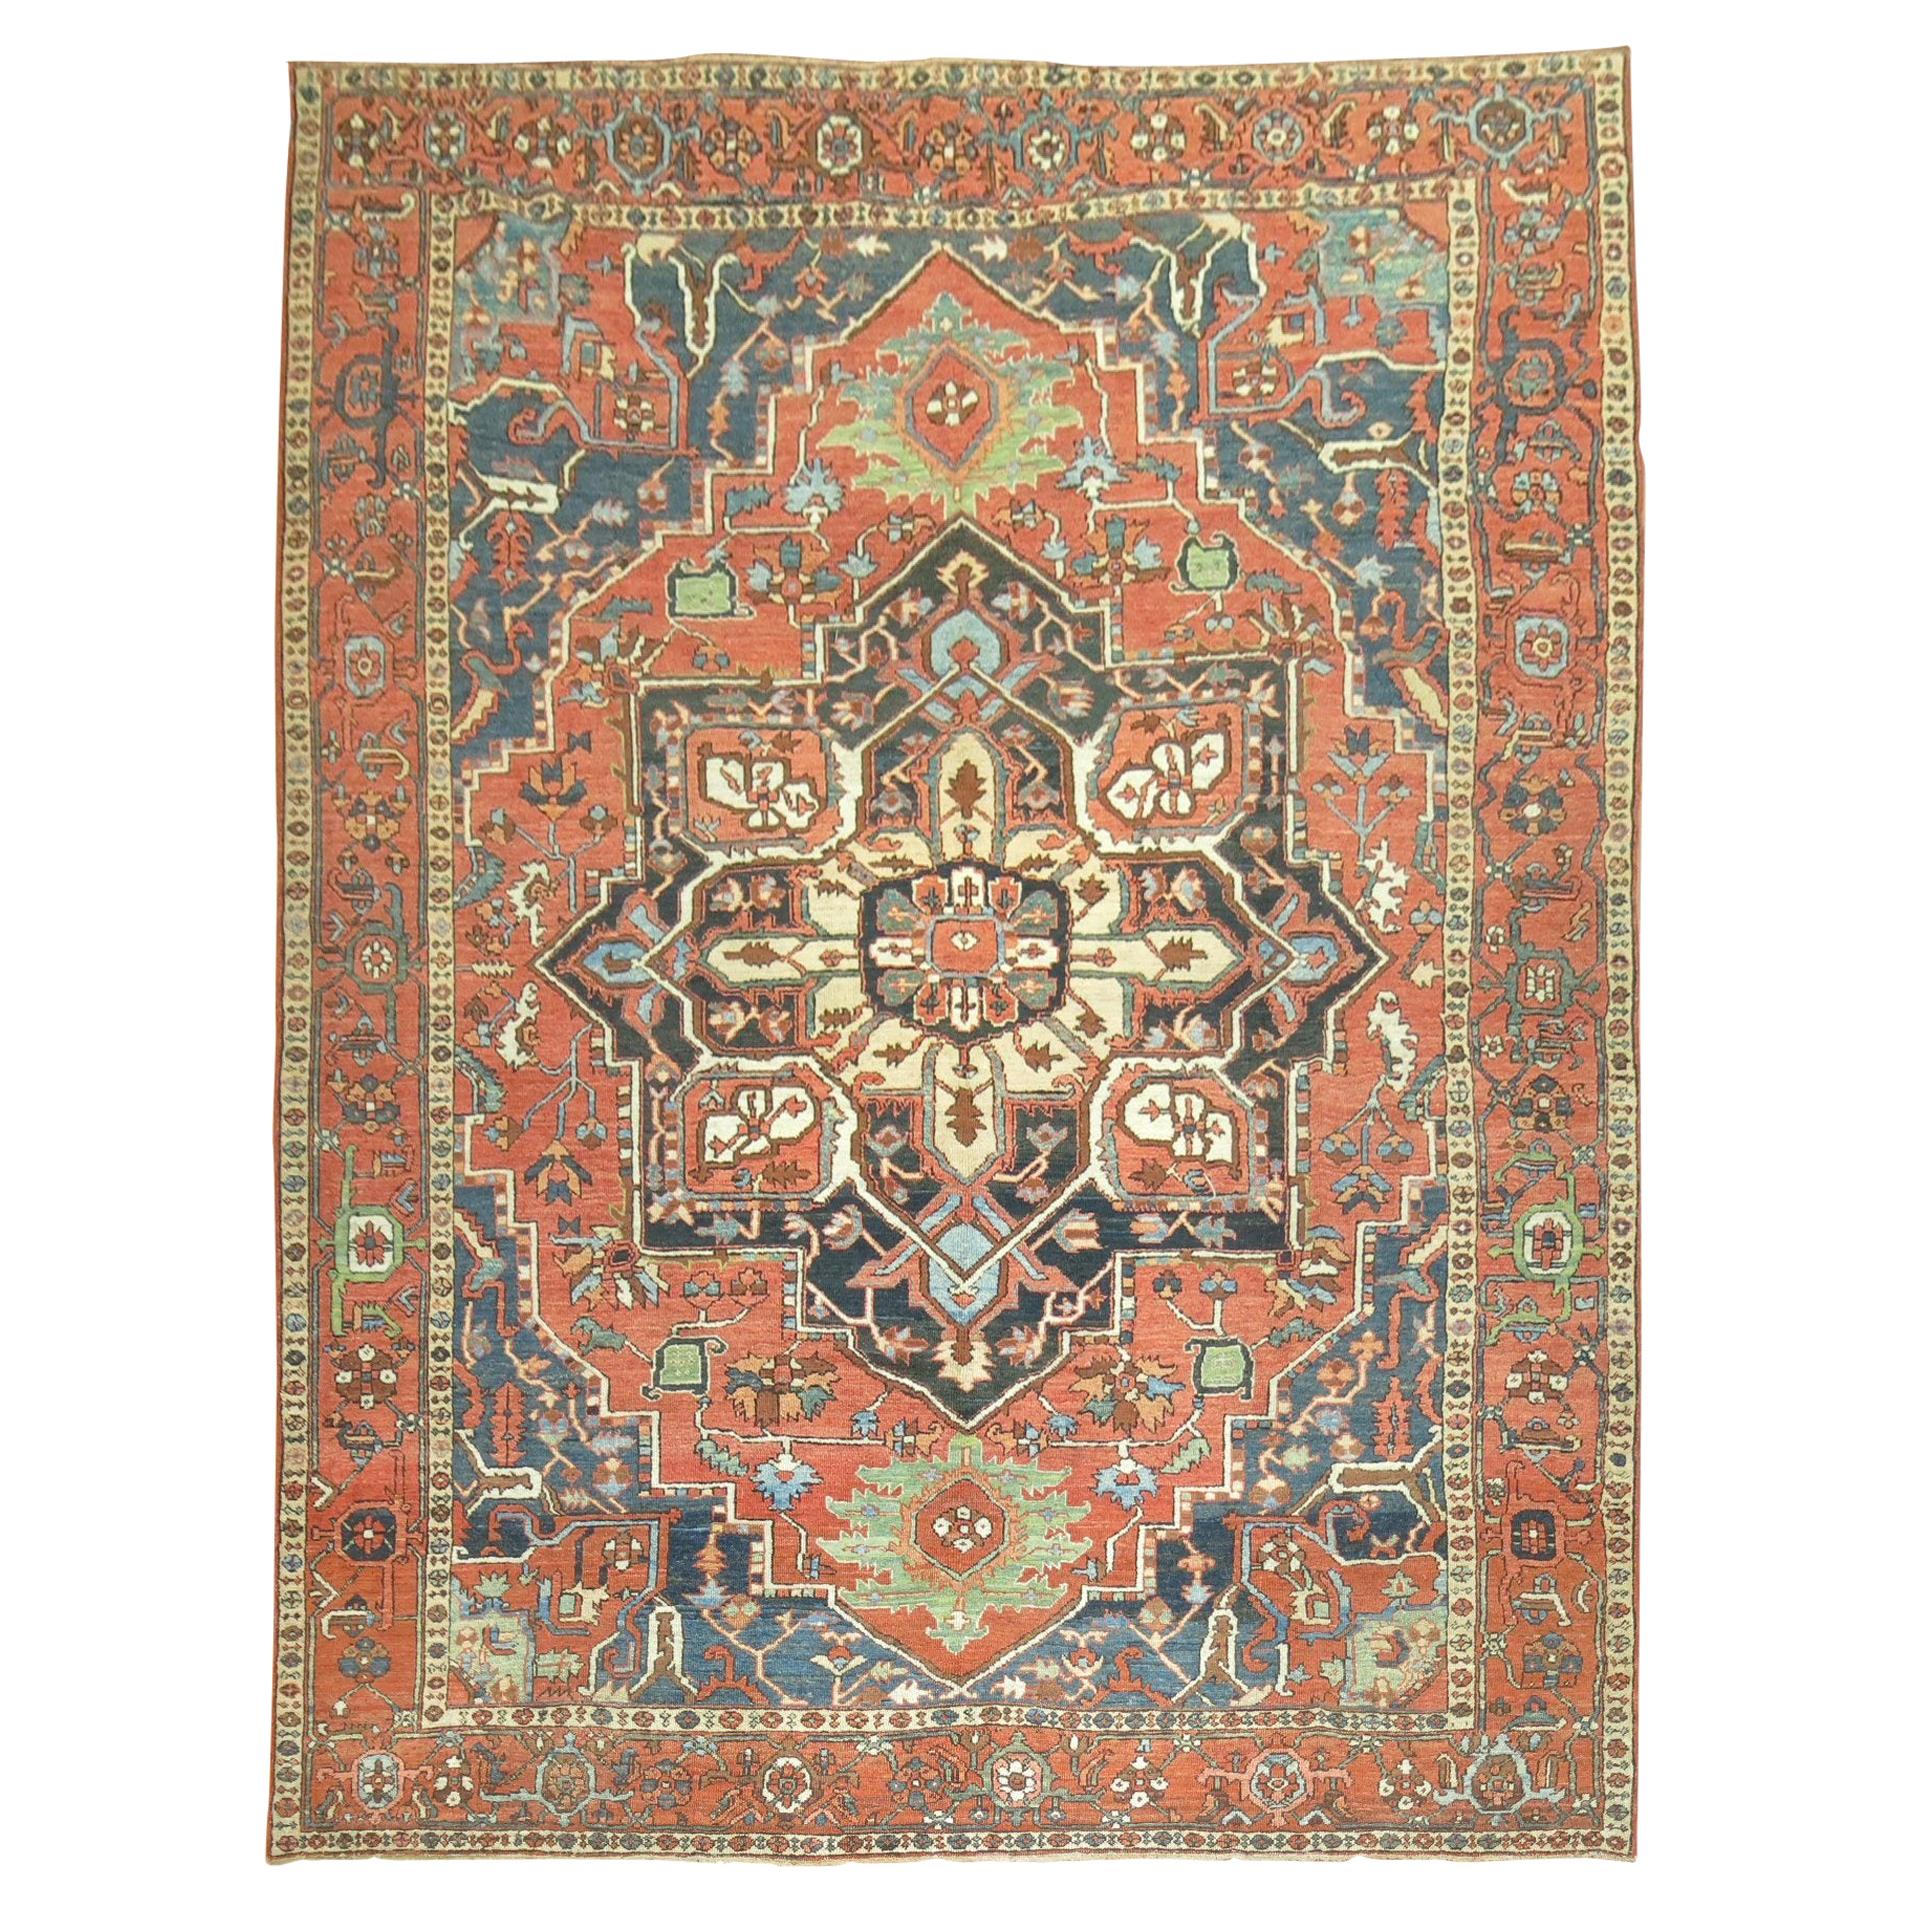 Grand tapis persan traditionnel ancien Heriz du début du XXe siècle